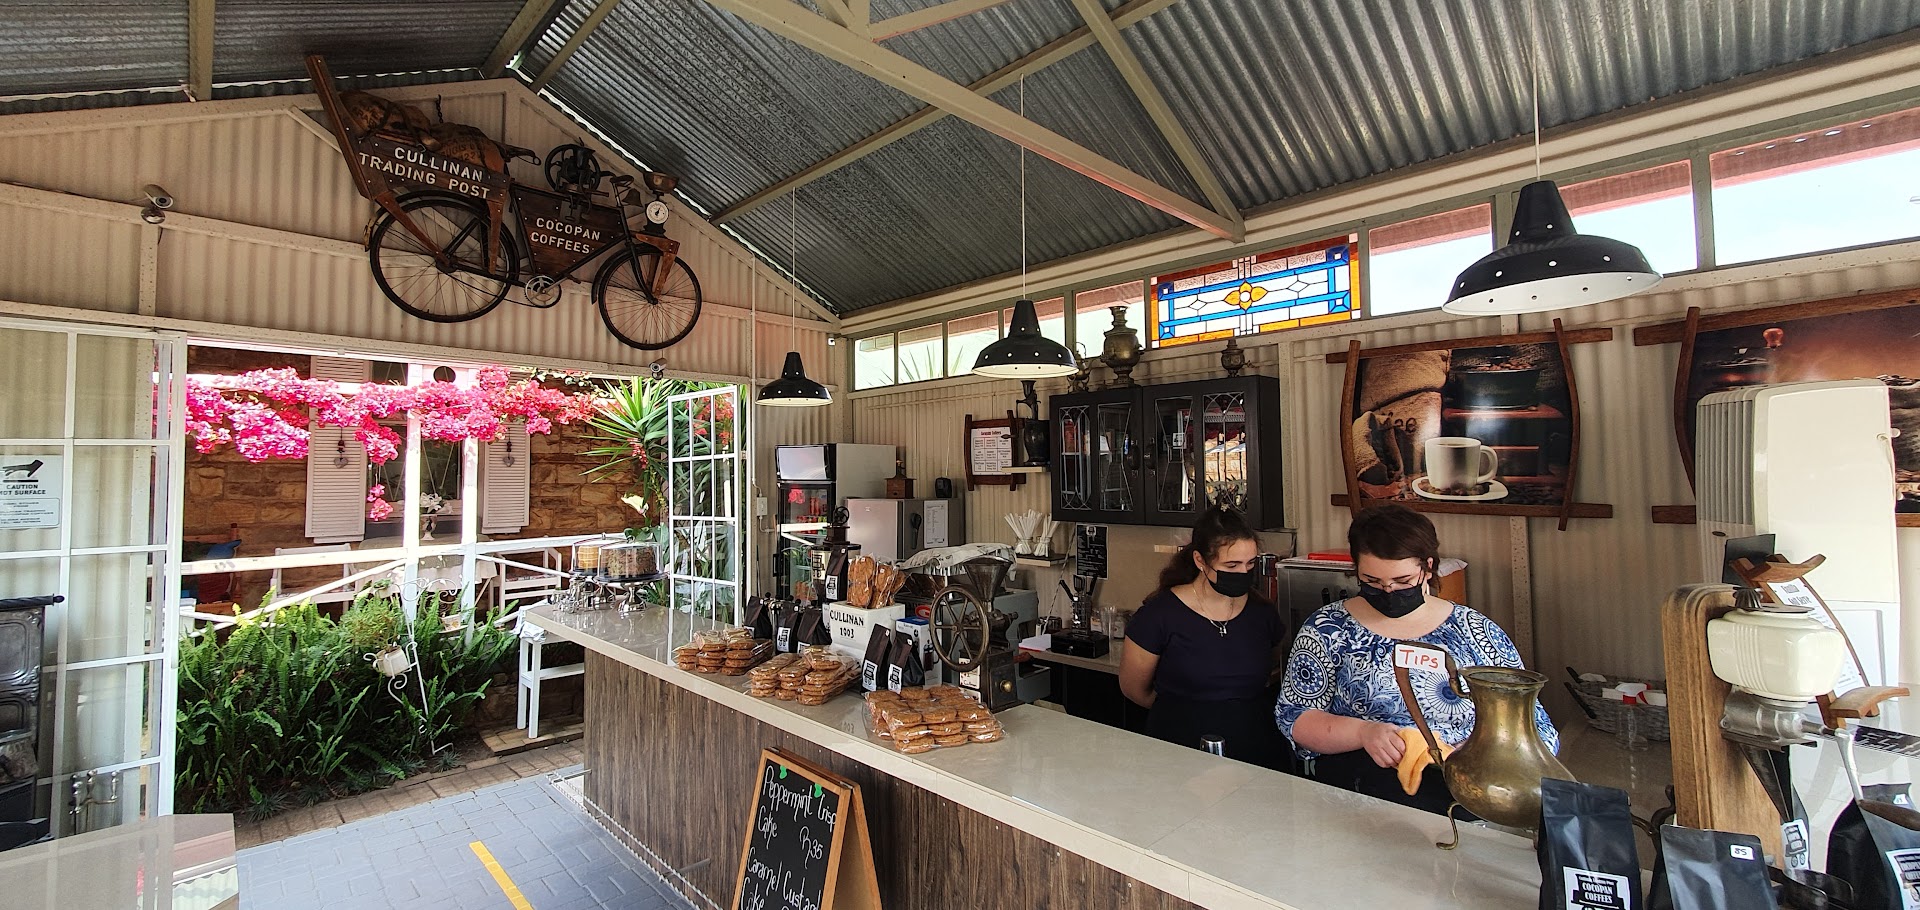 Cocopan Coffee Shop